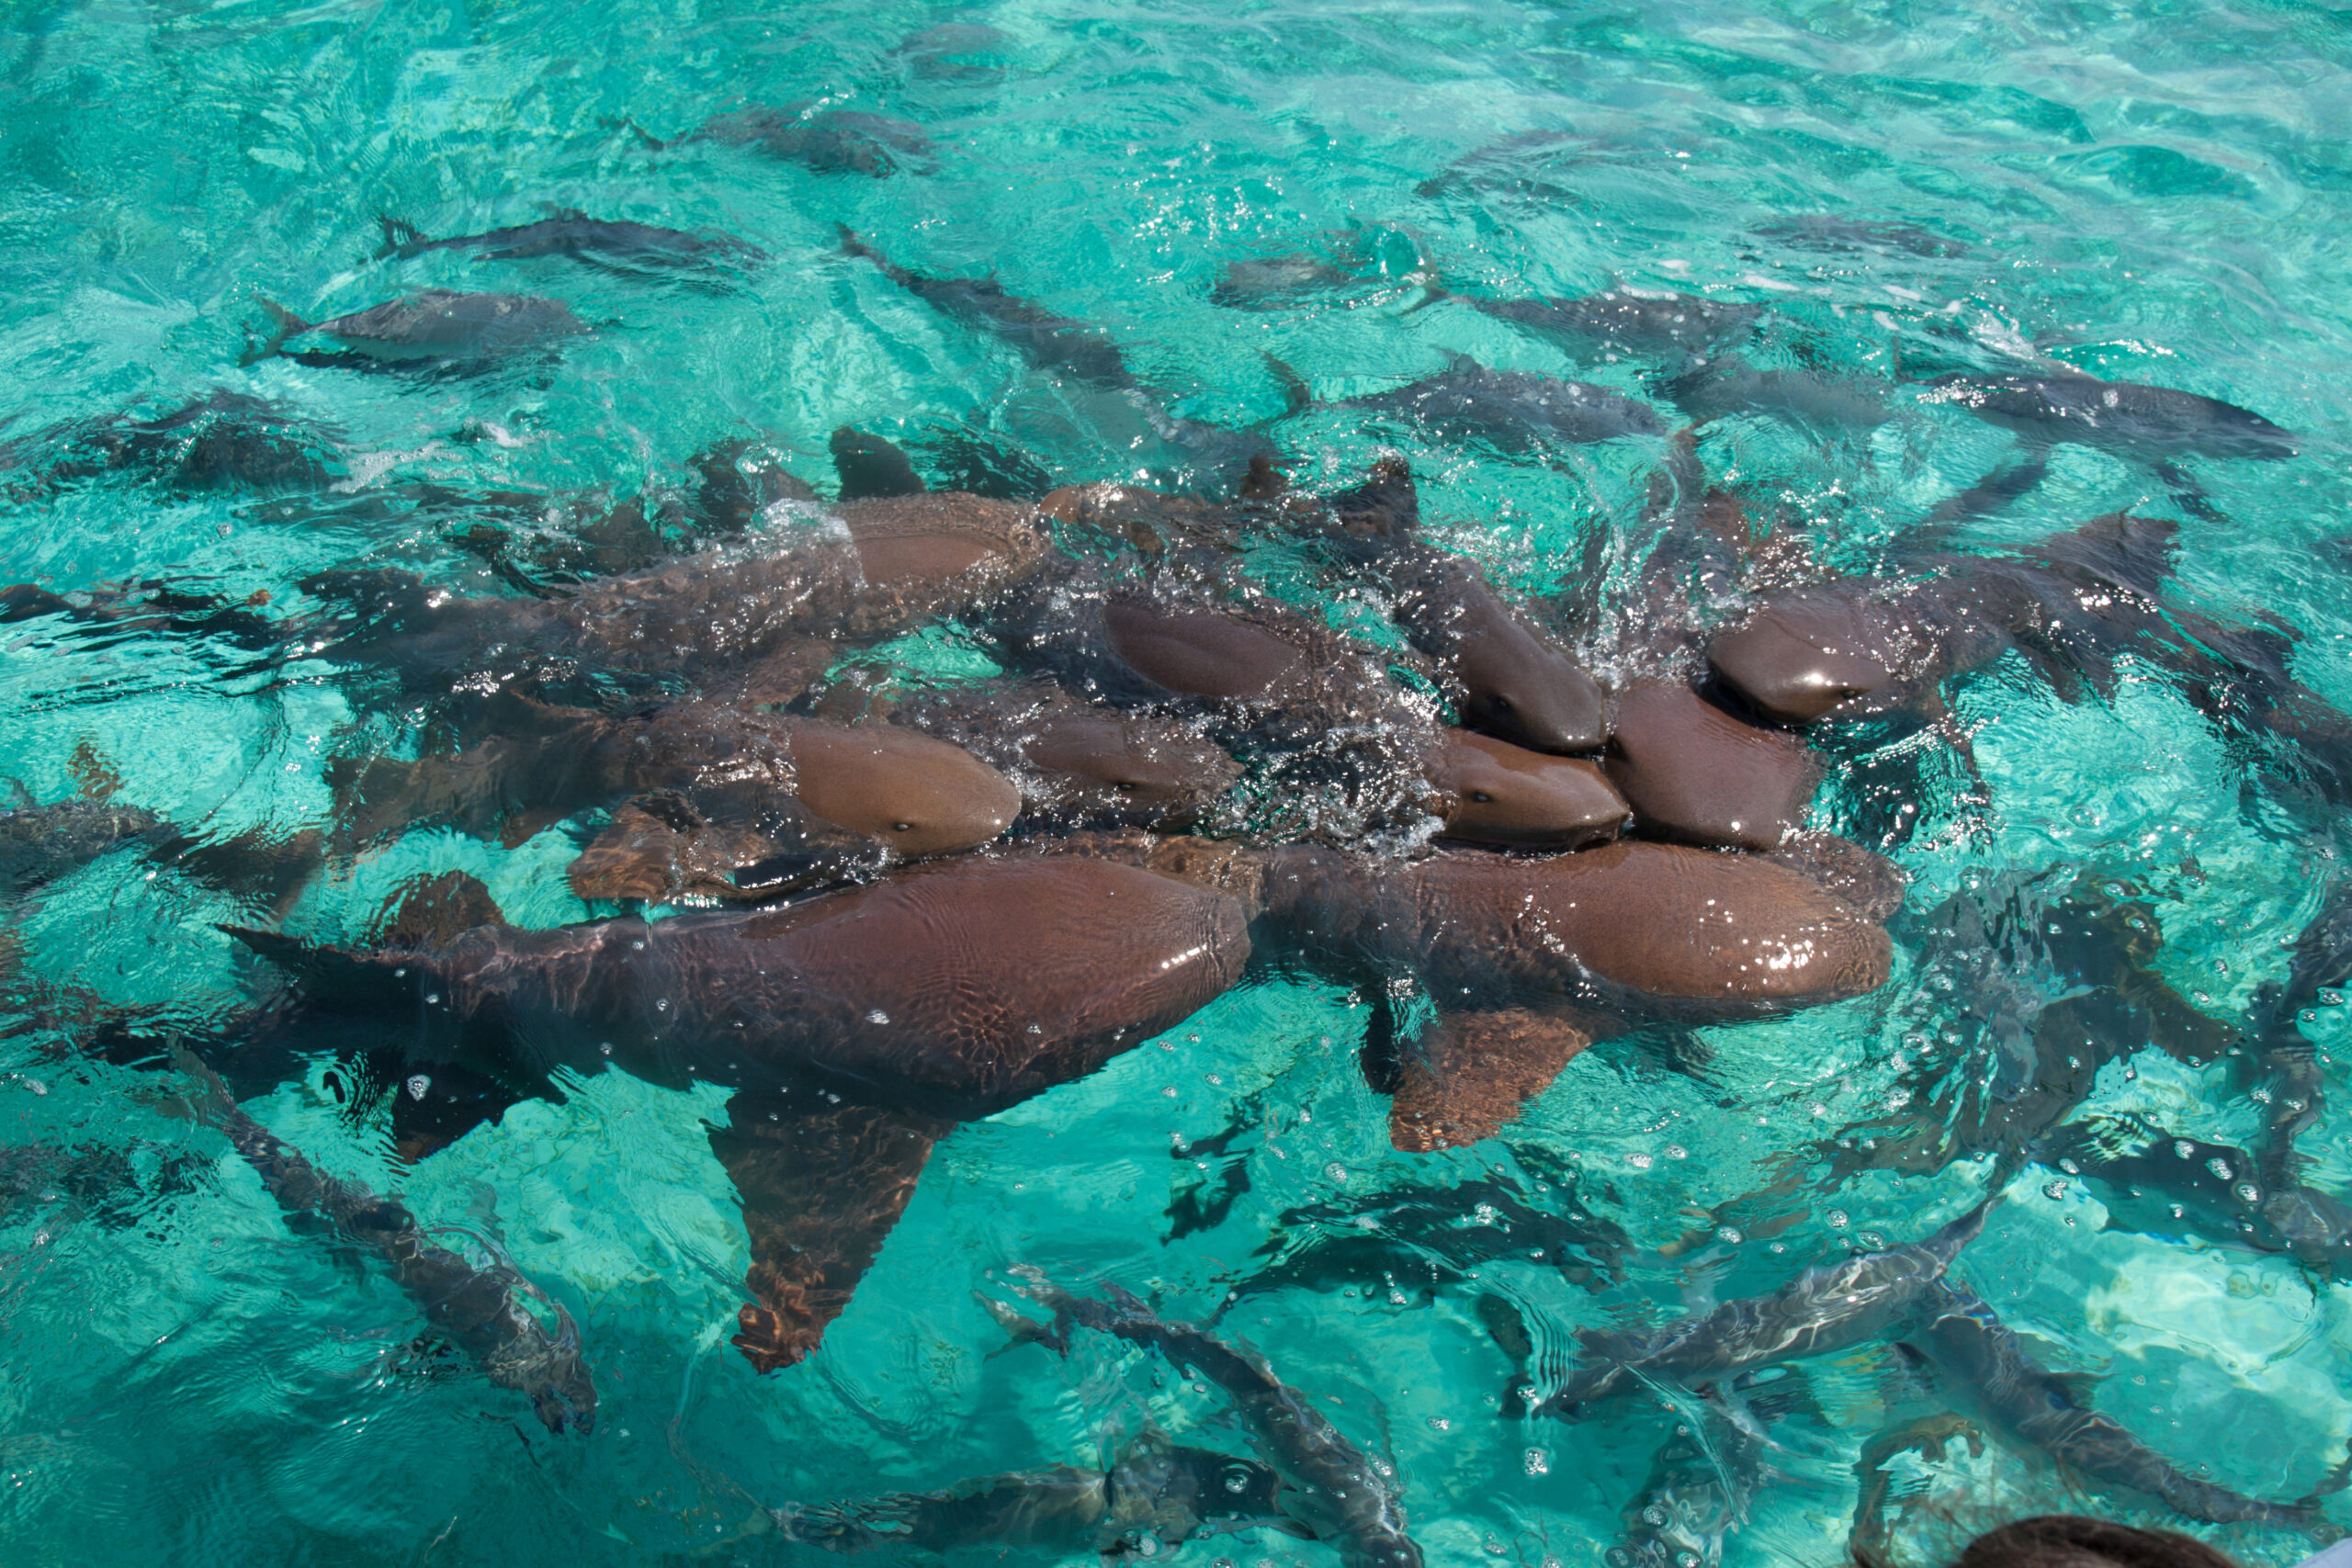 A group of nurse shark